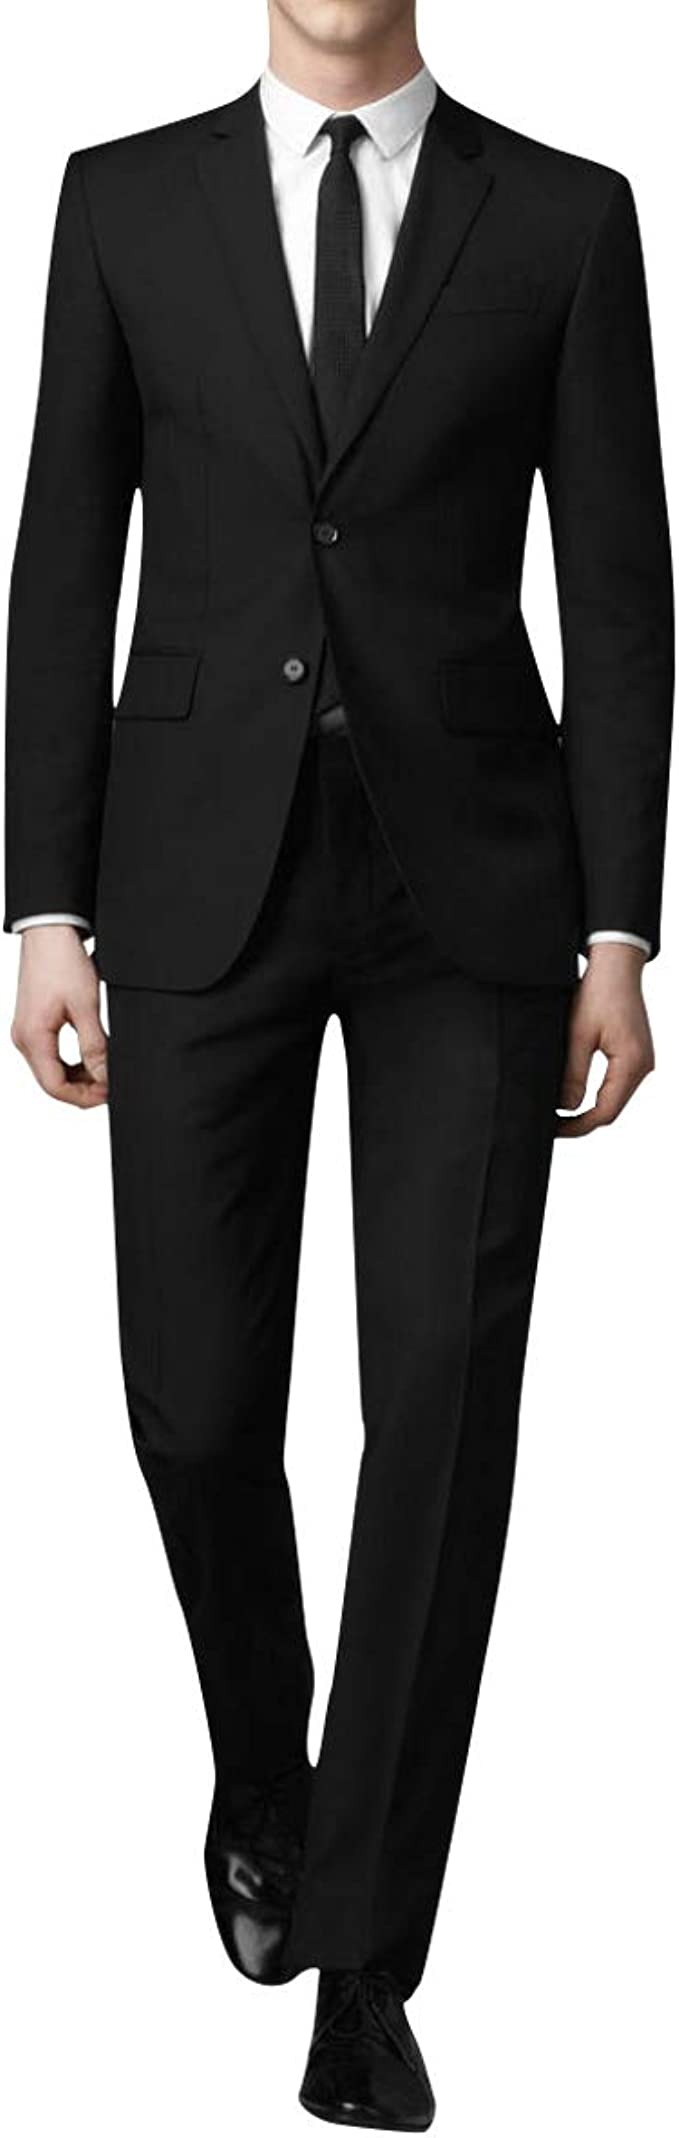 スーツ メンズ 上下セット 二つボタン ビジネススーツ スリム 黒 グレー ネイビー 大きいサイズ S-4XL 3色